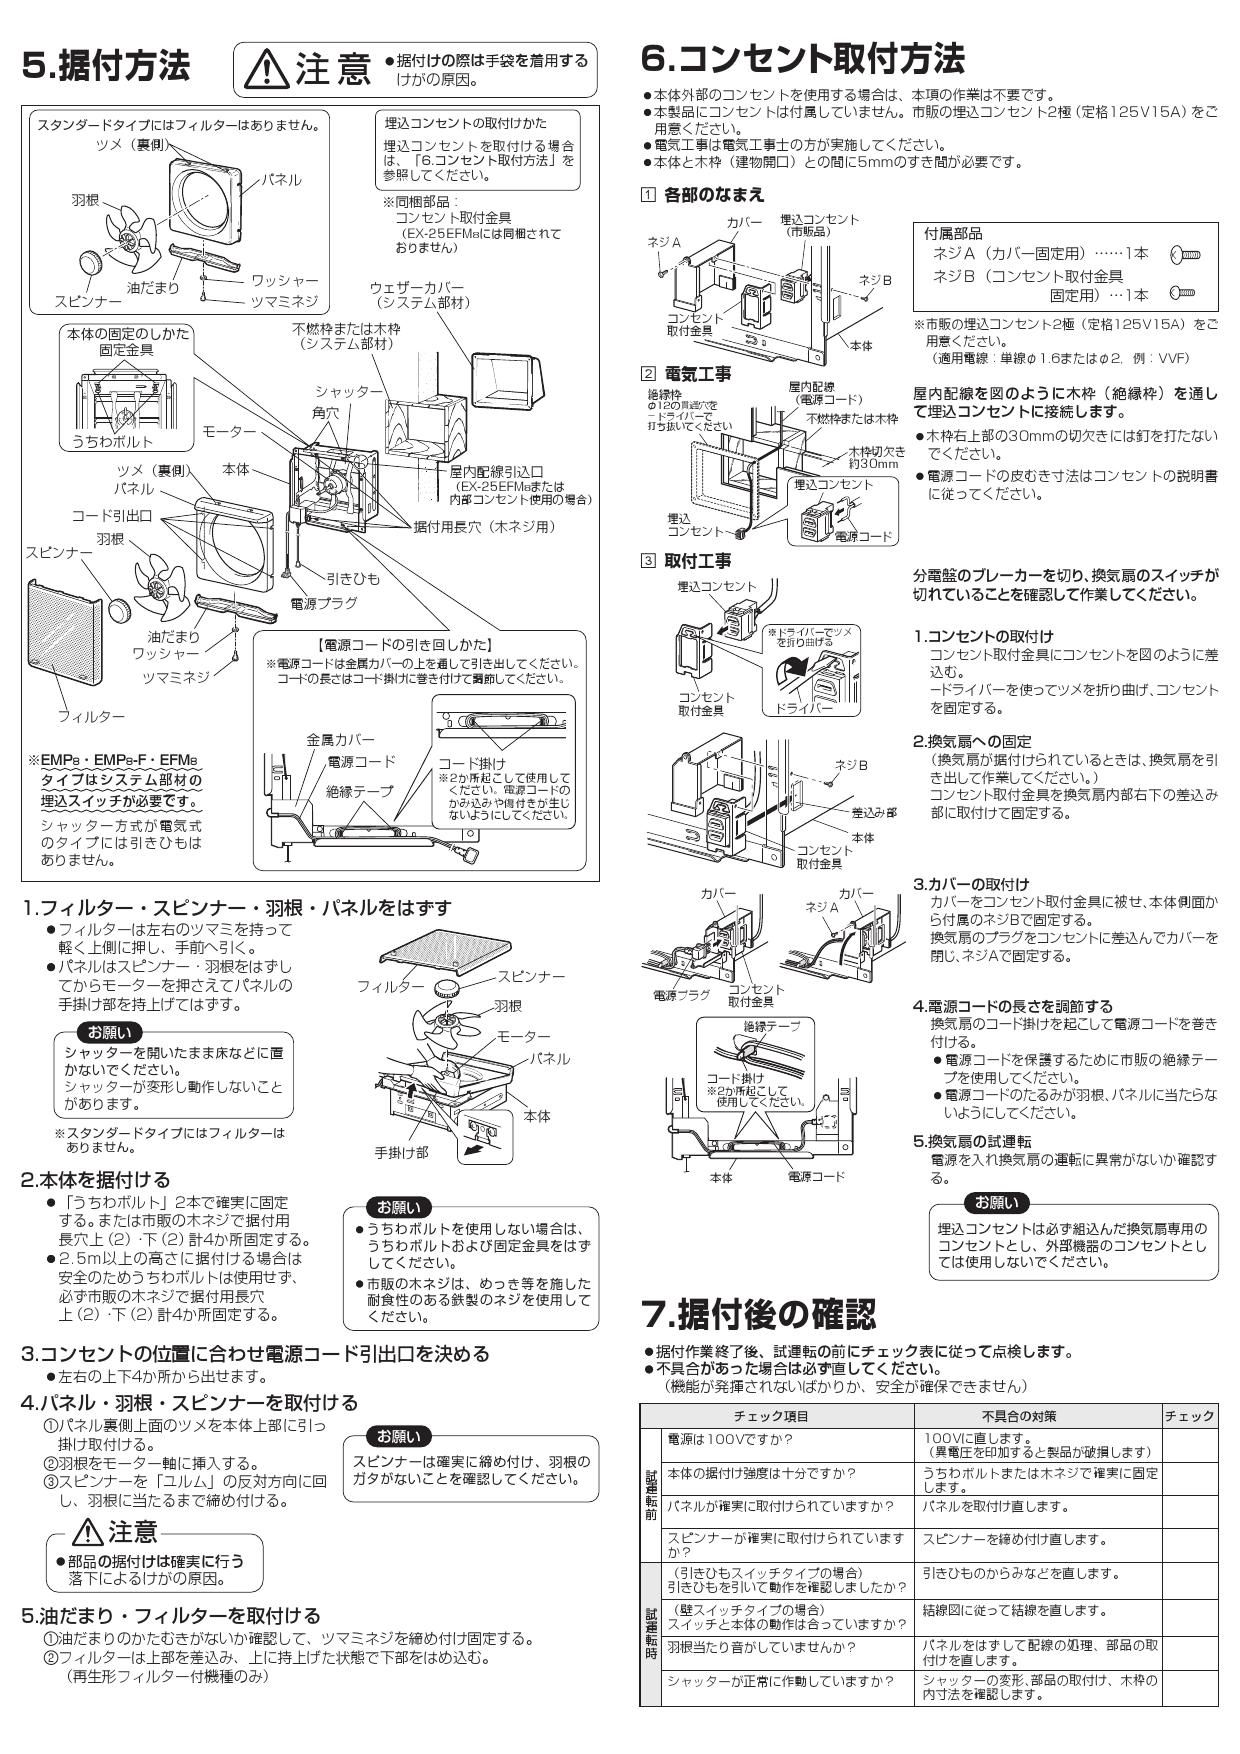 冬バーゲン☆】 三菱電機 EX-25EMP9-F レンジフードファン メタルコンパック ワンタッチフィルタータイプ 換気扇 